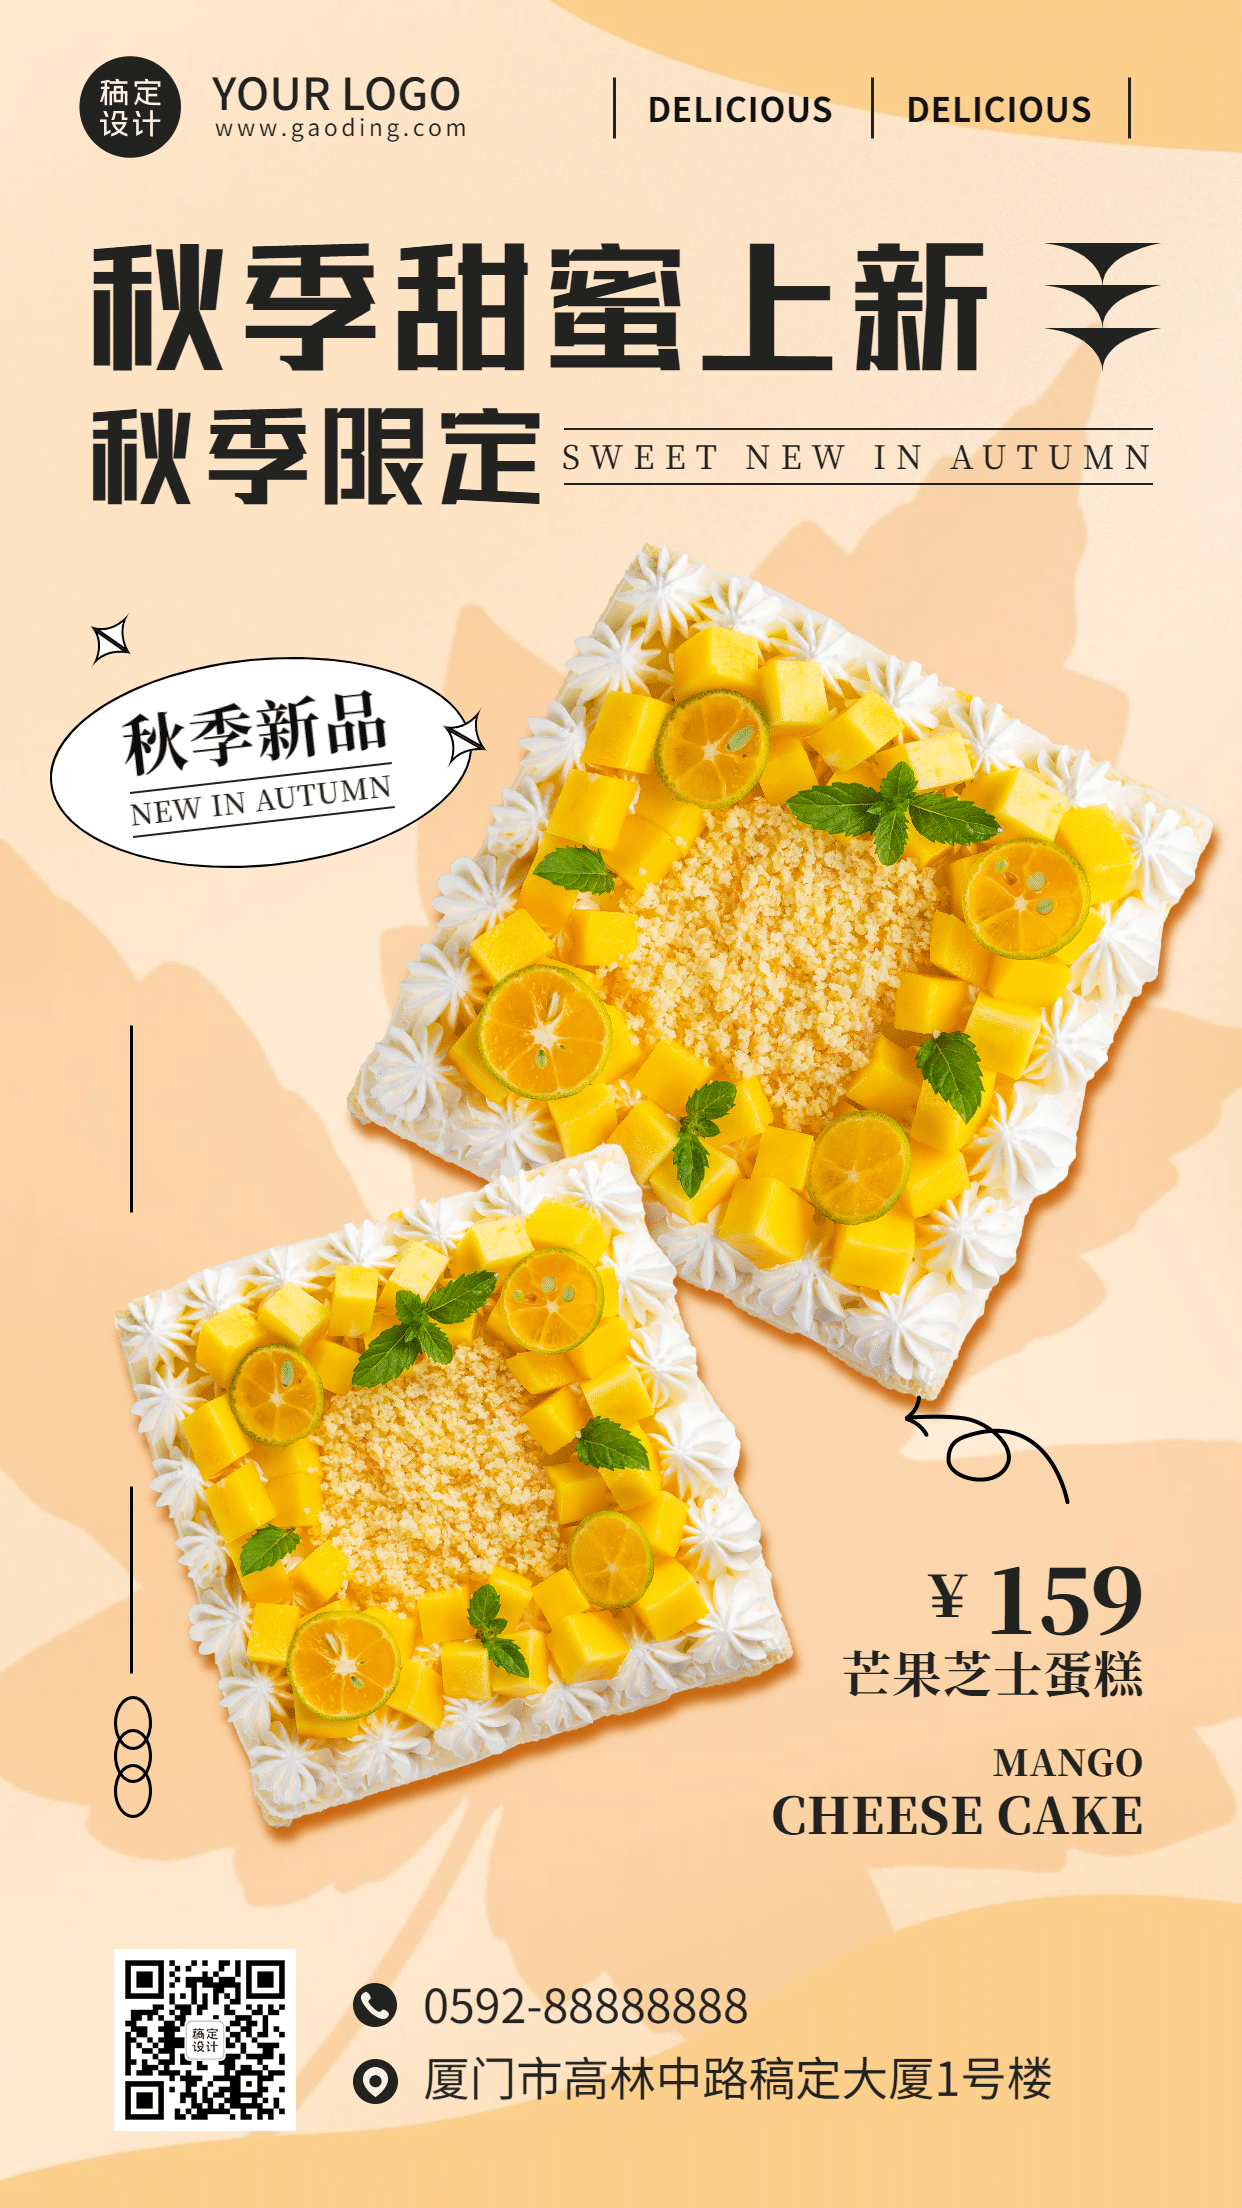 蛋糕烘焙秋季新品营销餐饮美食手机海报预览效果